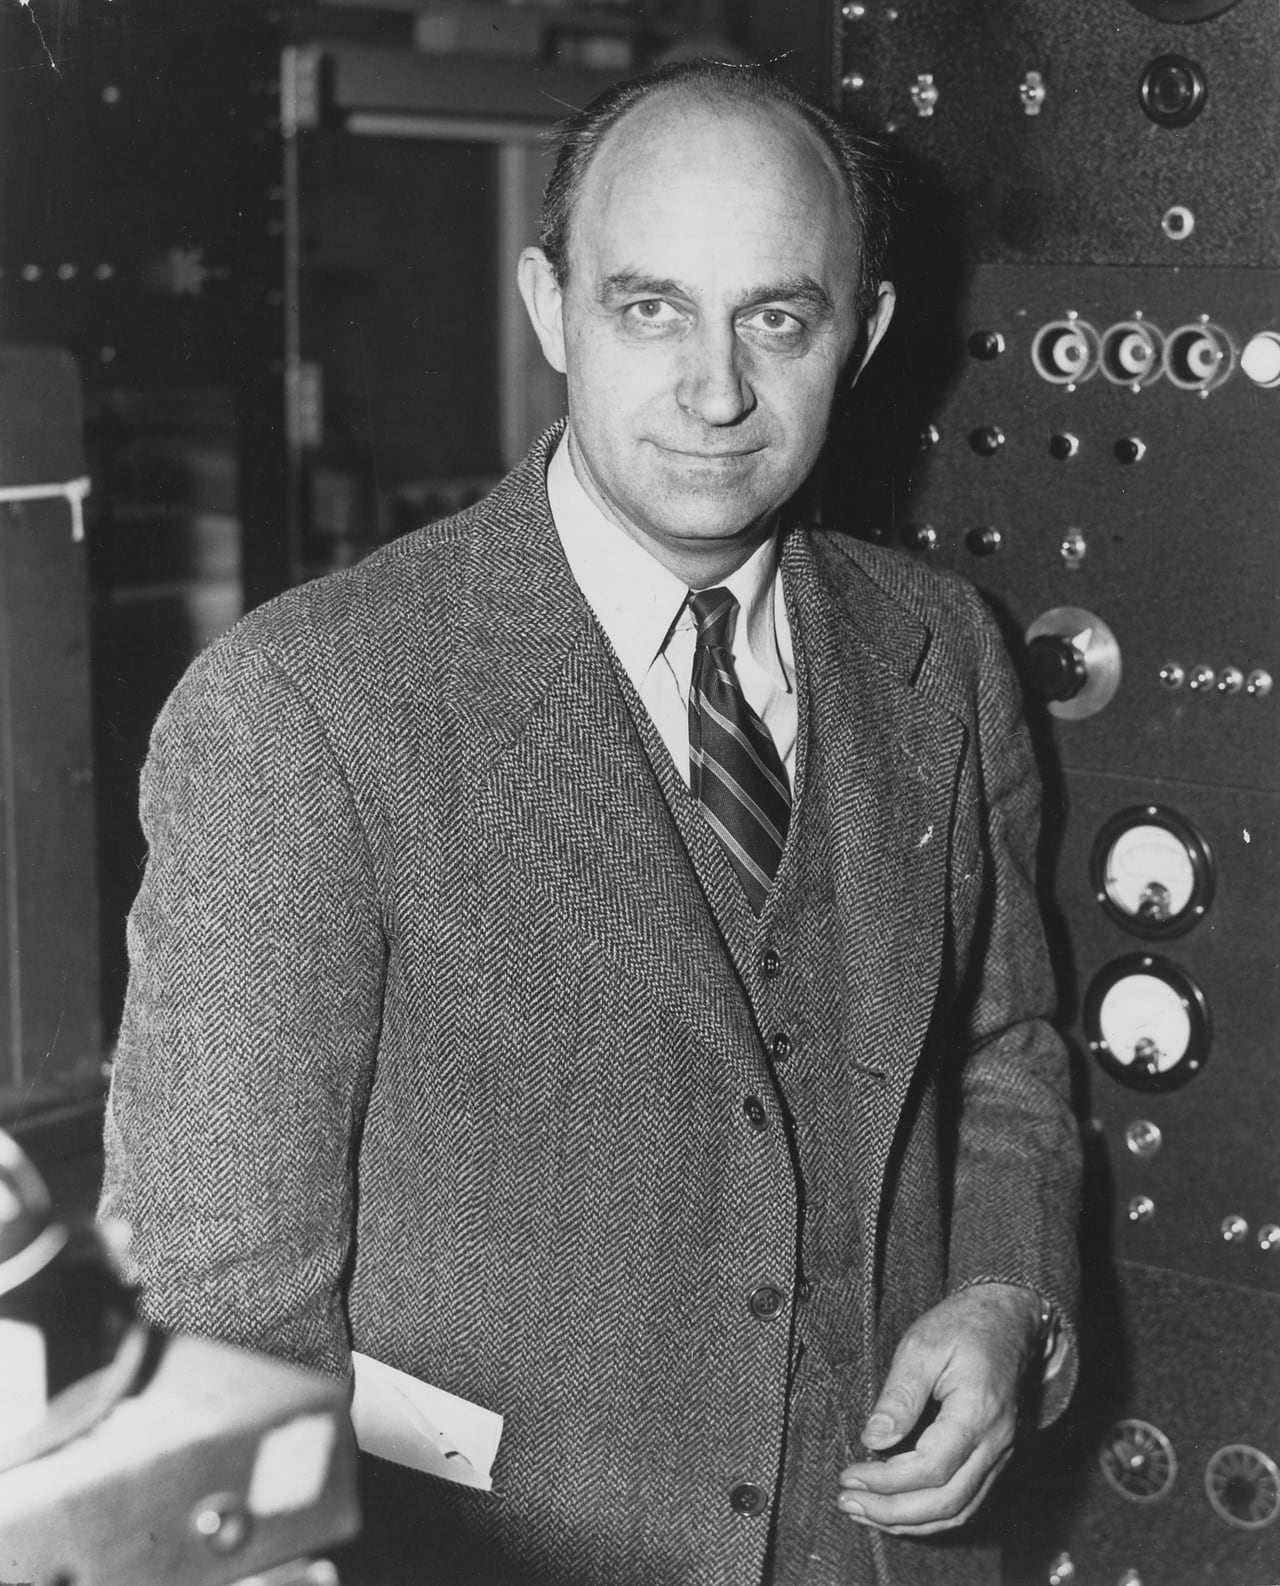 17. Dezember 1938 - Kernspaltung: Ein Experiment veränderte die Welt ...